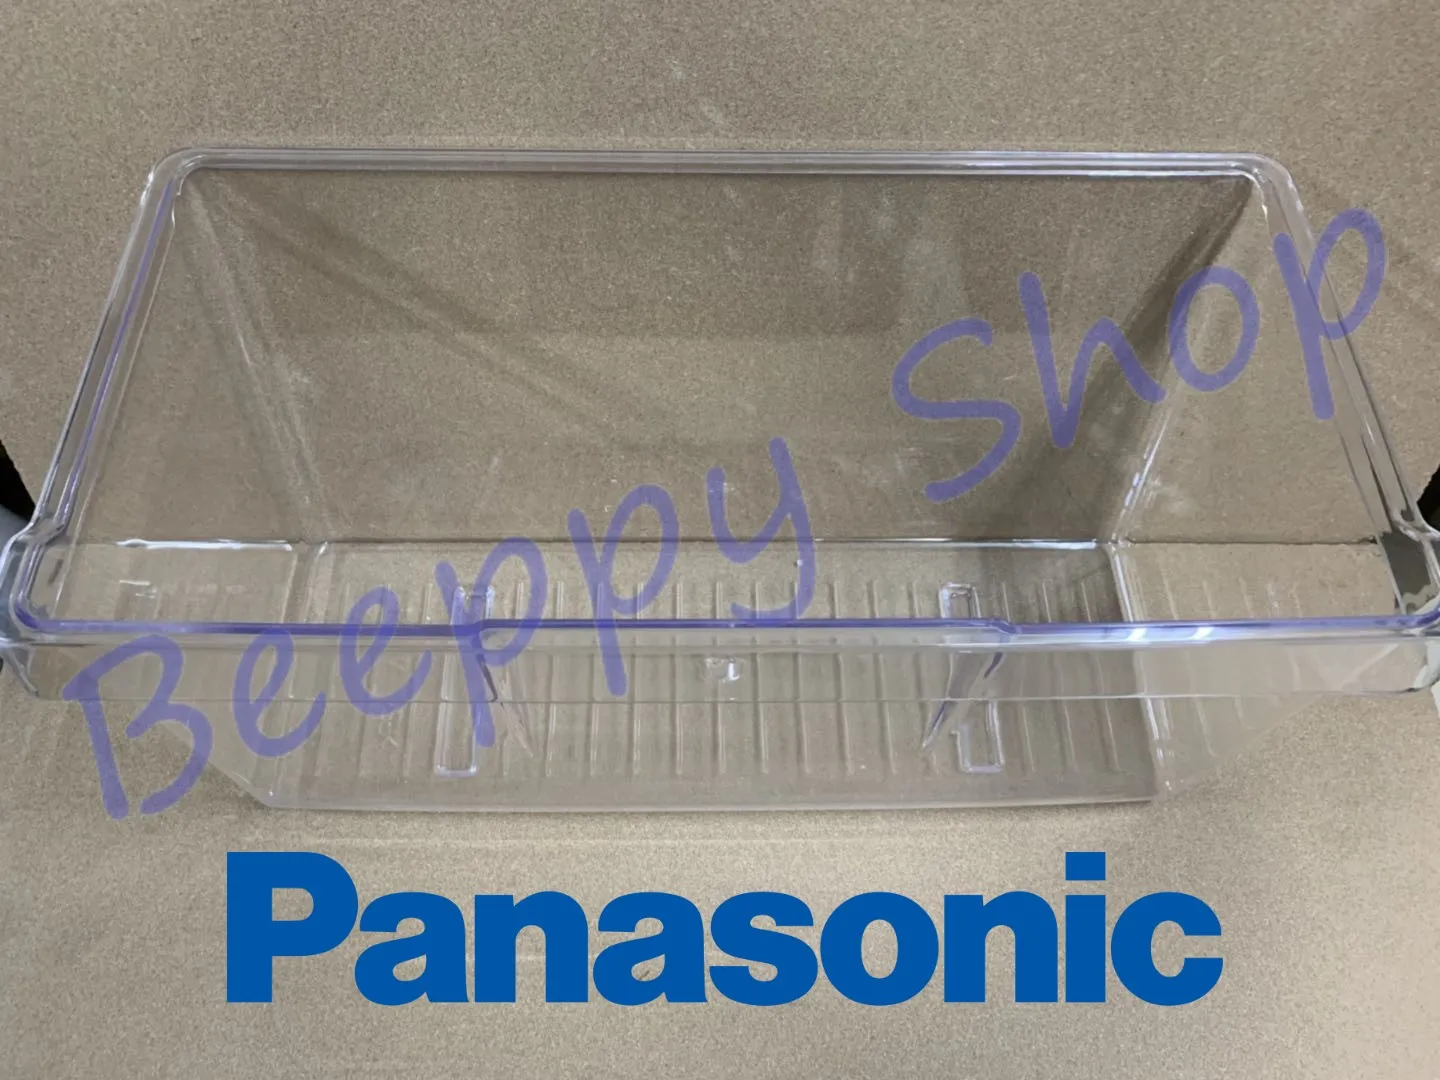 กล่องใส่ผักในตู้เย็น กล่องผัก ตู้เย็น Panasonic พานาโซนิค รุ่น NR-BU301/BU302/BU303/BU304 ของแท้